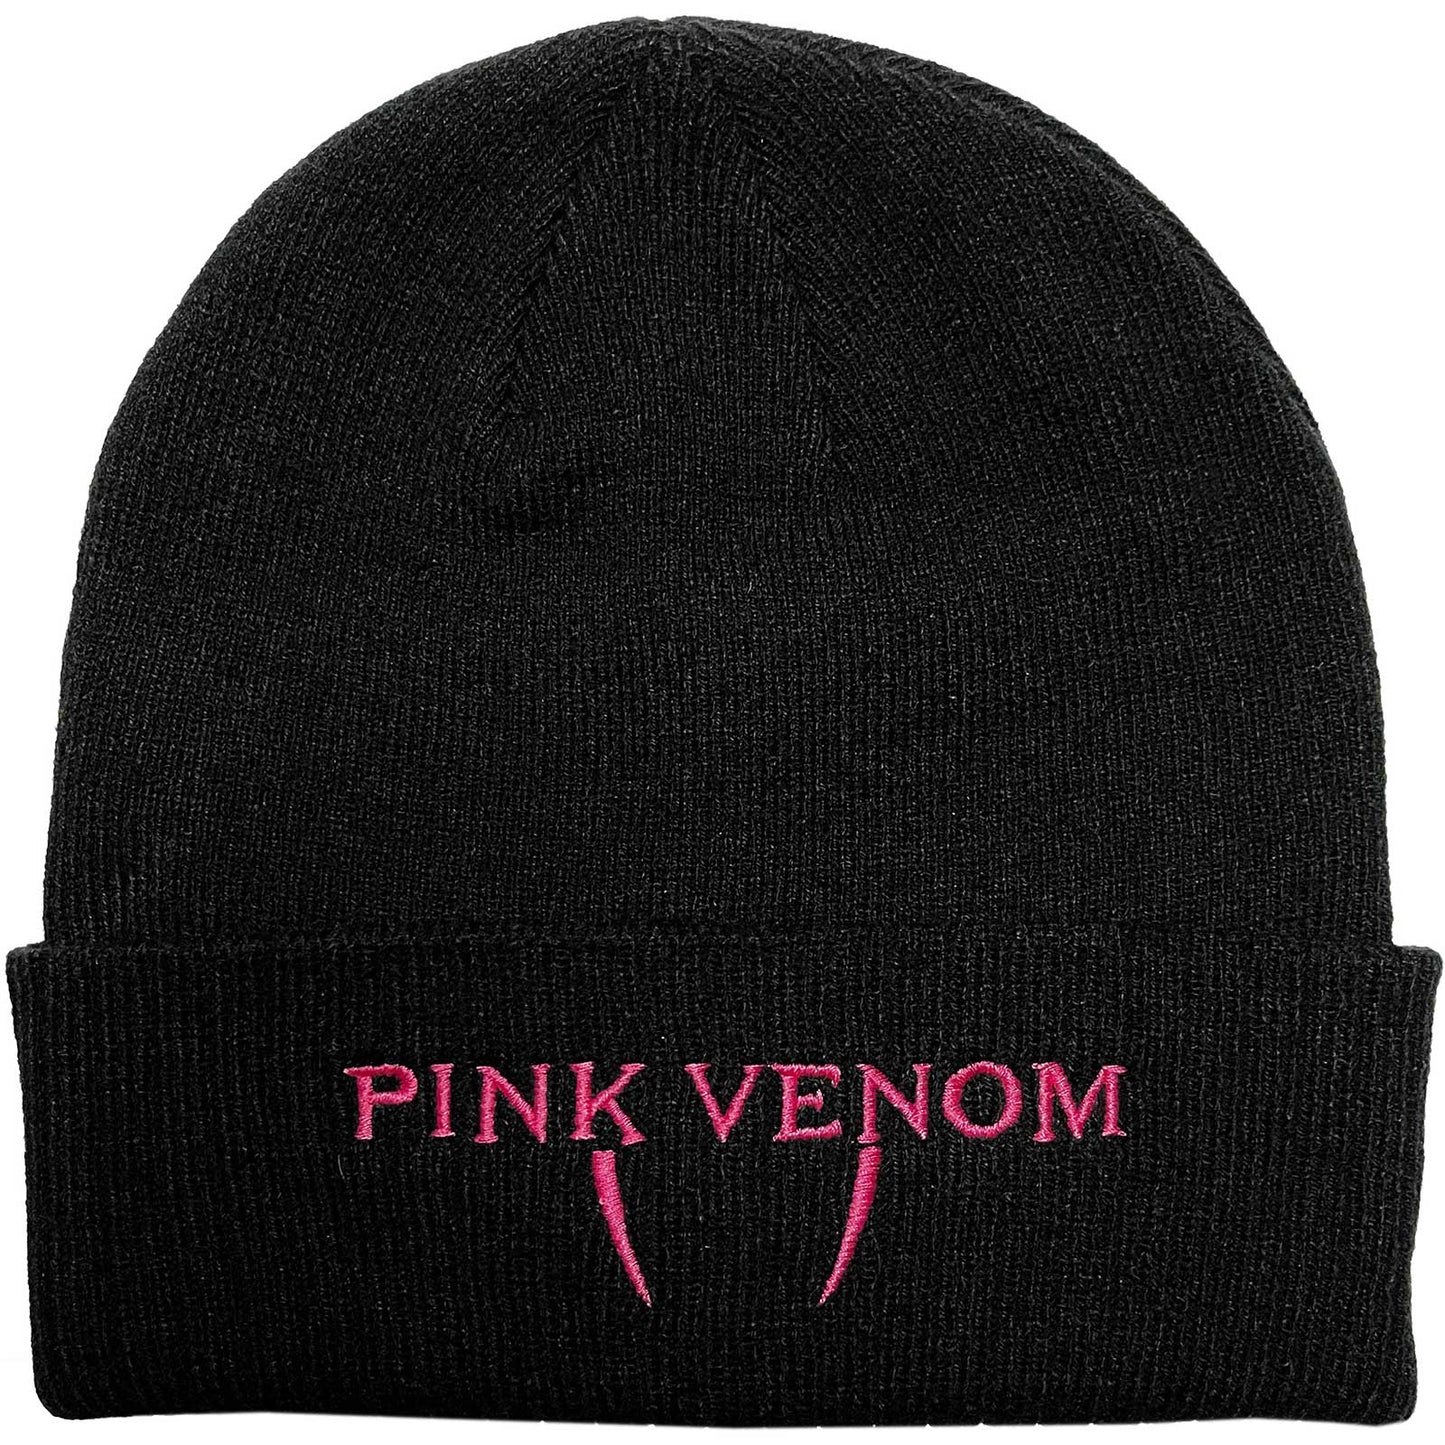 BLACKPINK - Pink Venom Beanie